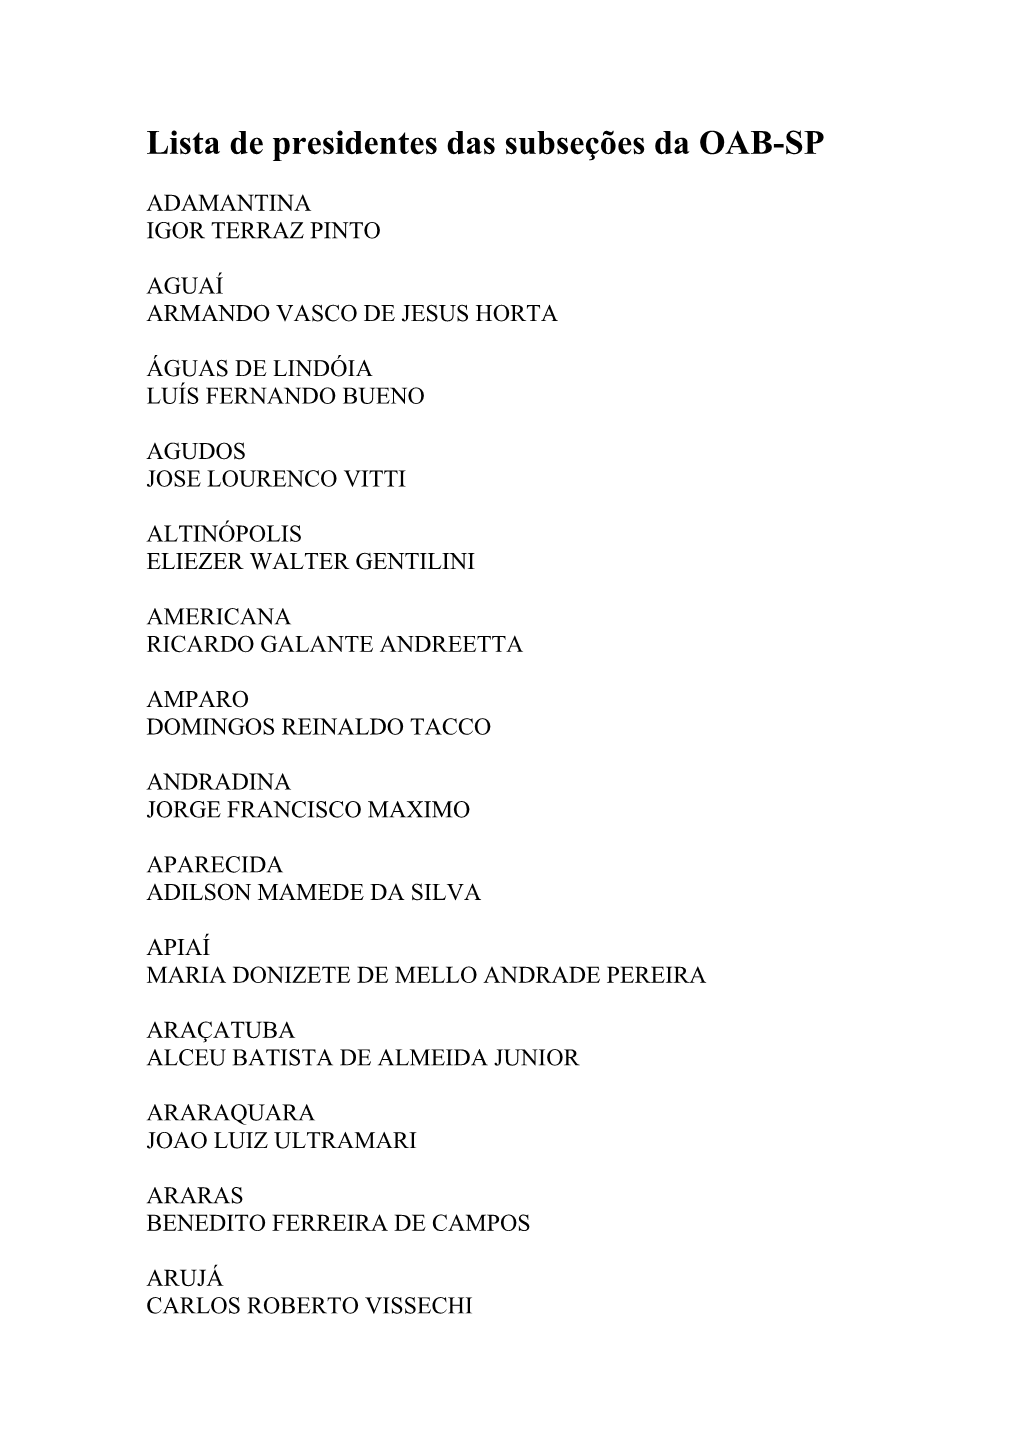 Lista De Presidentes Das Subseções Da OAB-SP